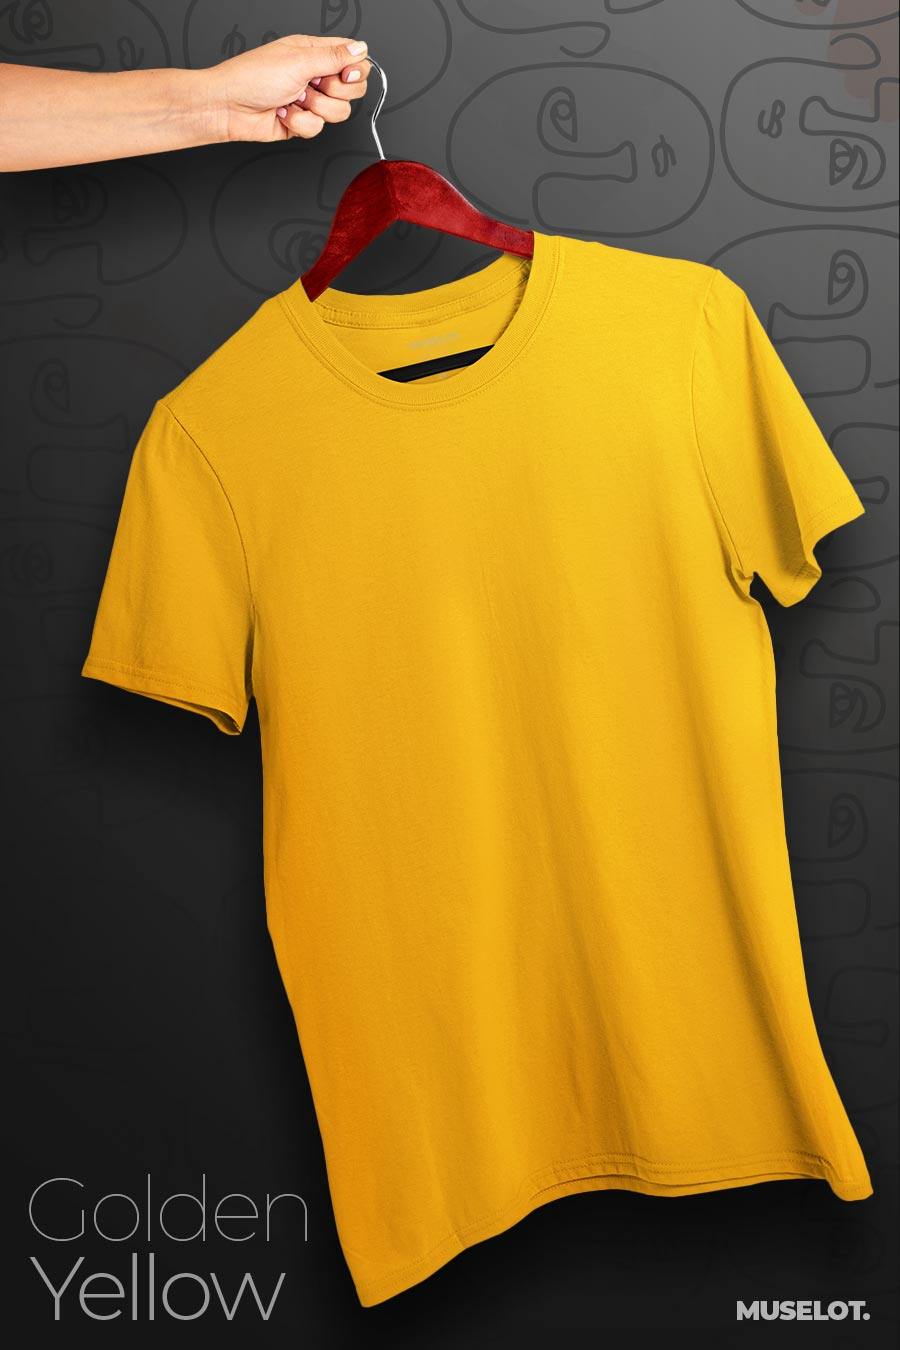 Unisex premium plus size t shirts online | Muselot